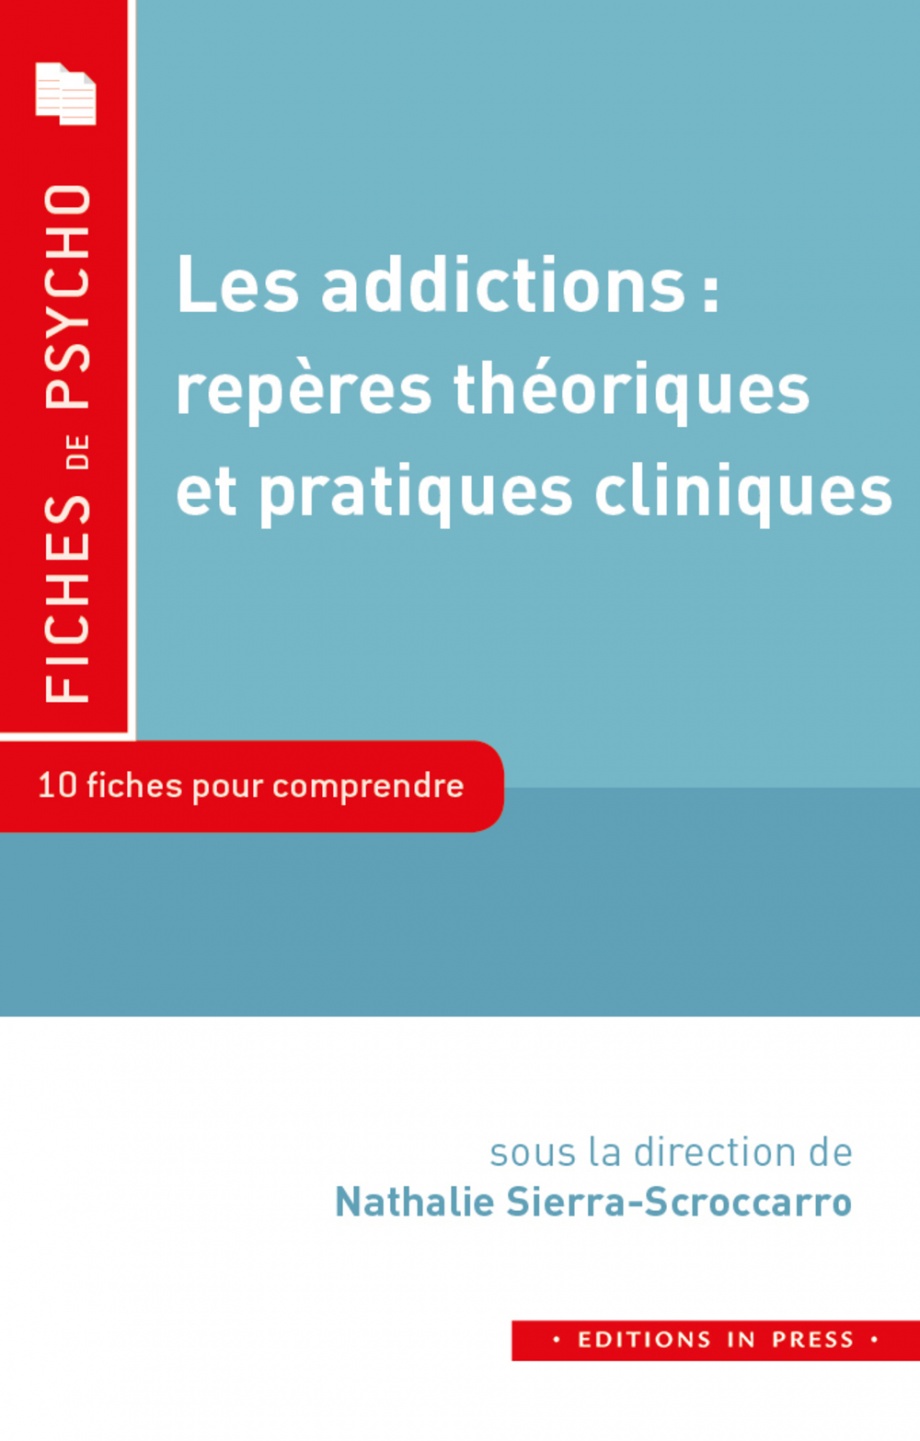 Image Les addictions : repères théoriques et pratiques cliniques